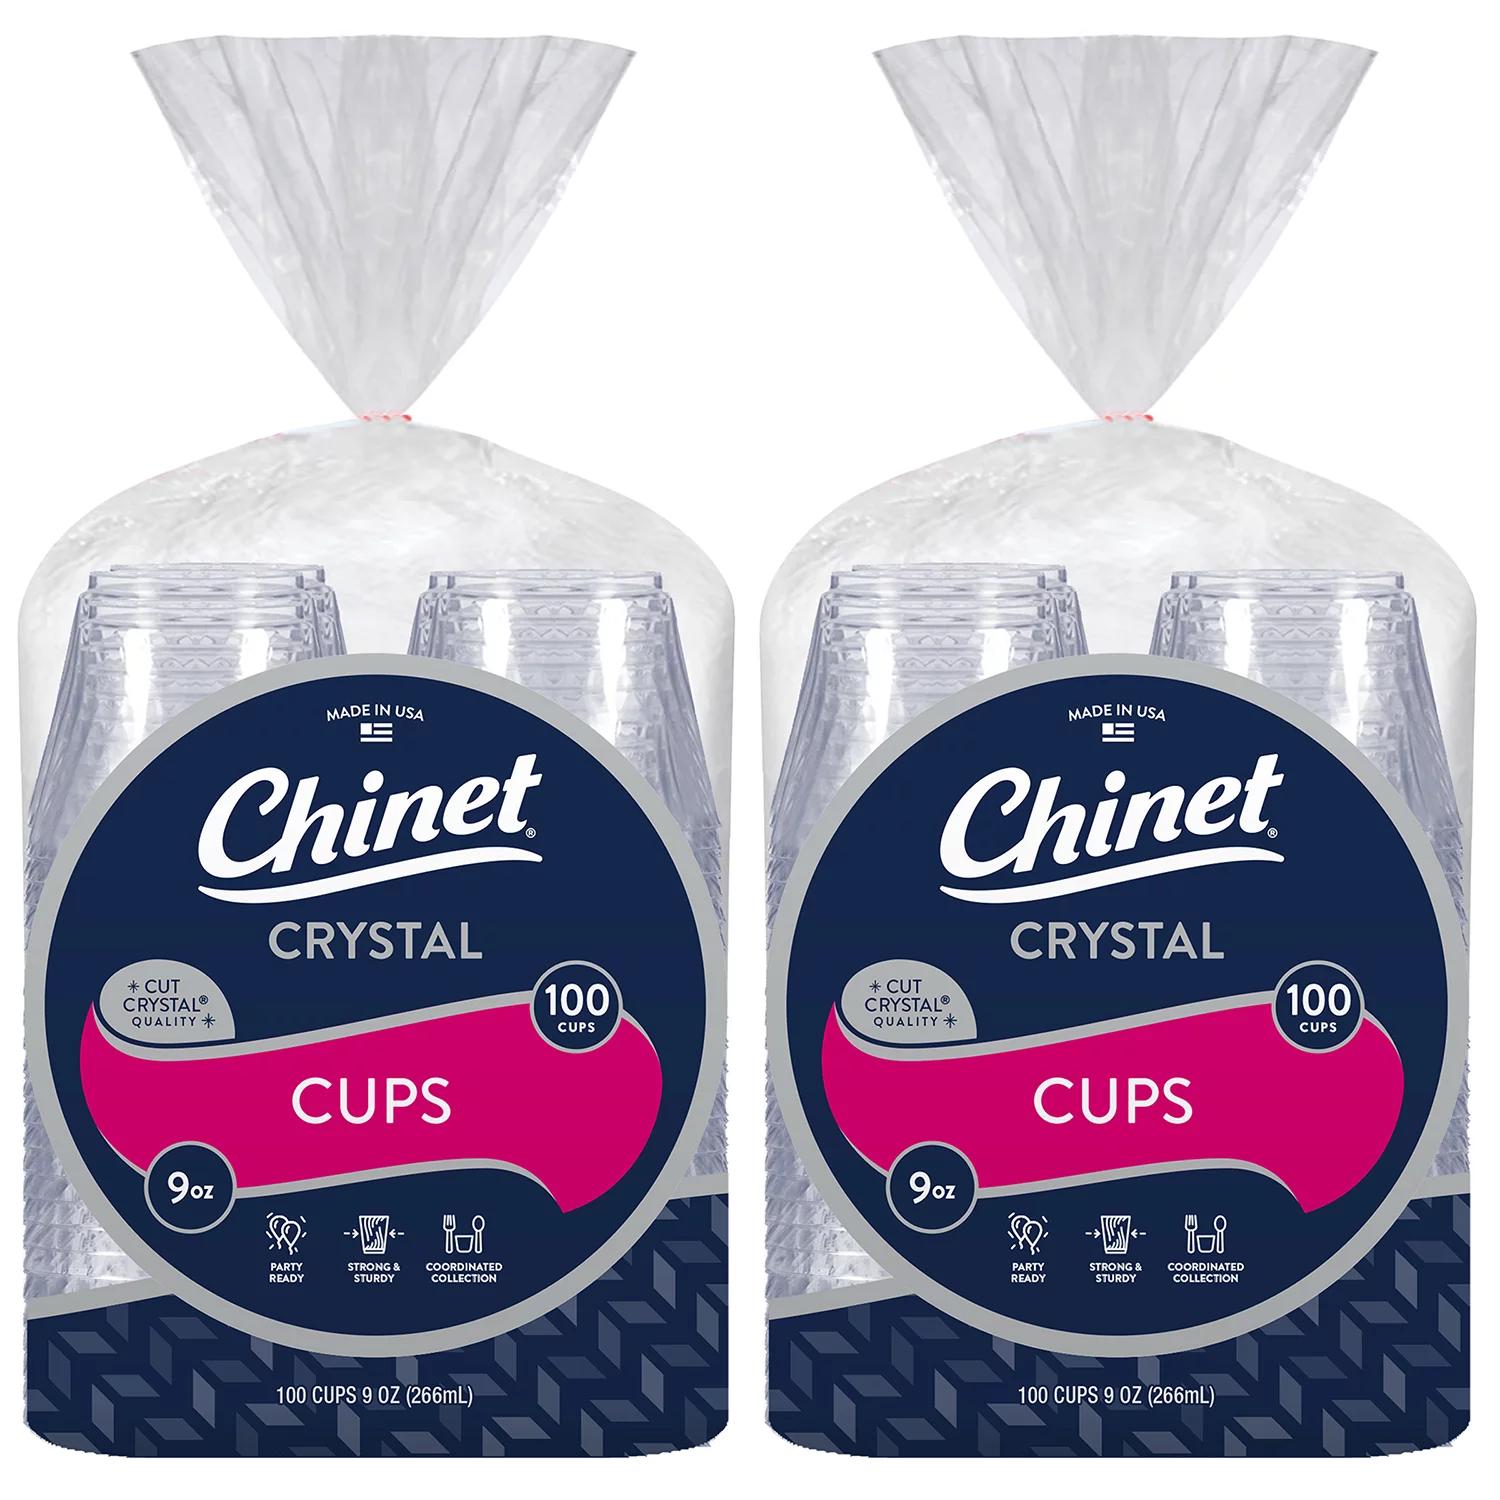 Chinet Premium Plastic 10 Oz. White Cups 420 Ct Bag